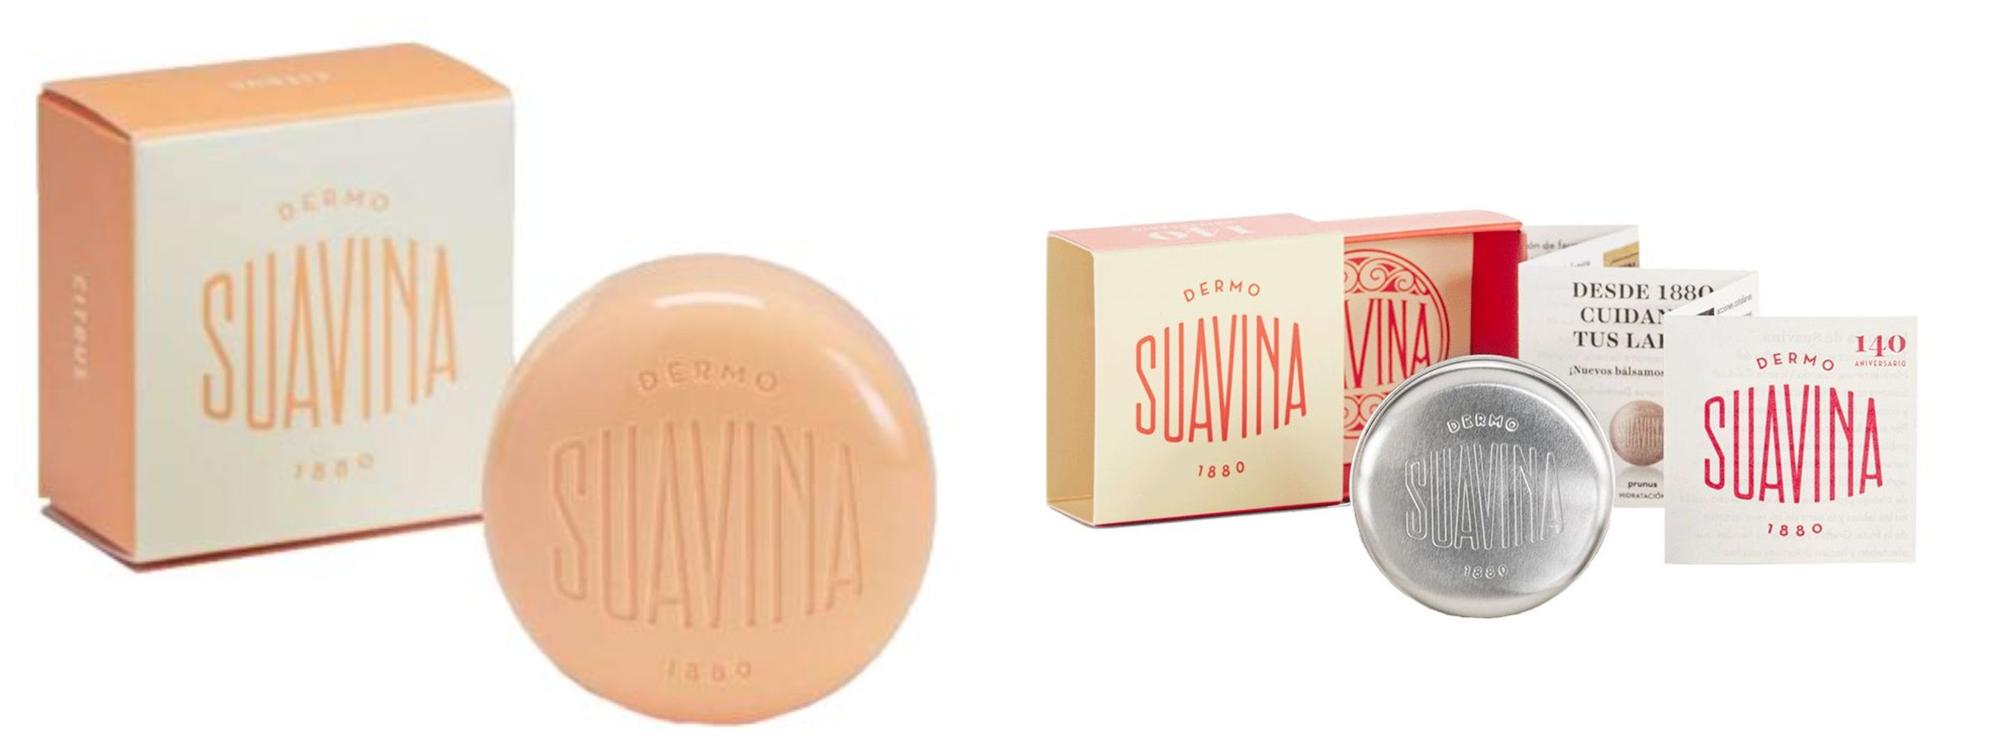 Estos son los dos productos de Suavina premiados en la reciente gala celebrada en Barcelona.